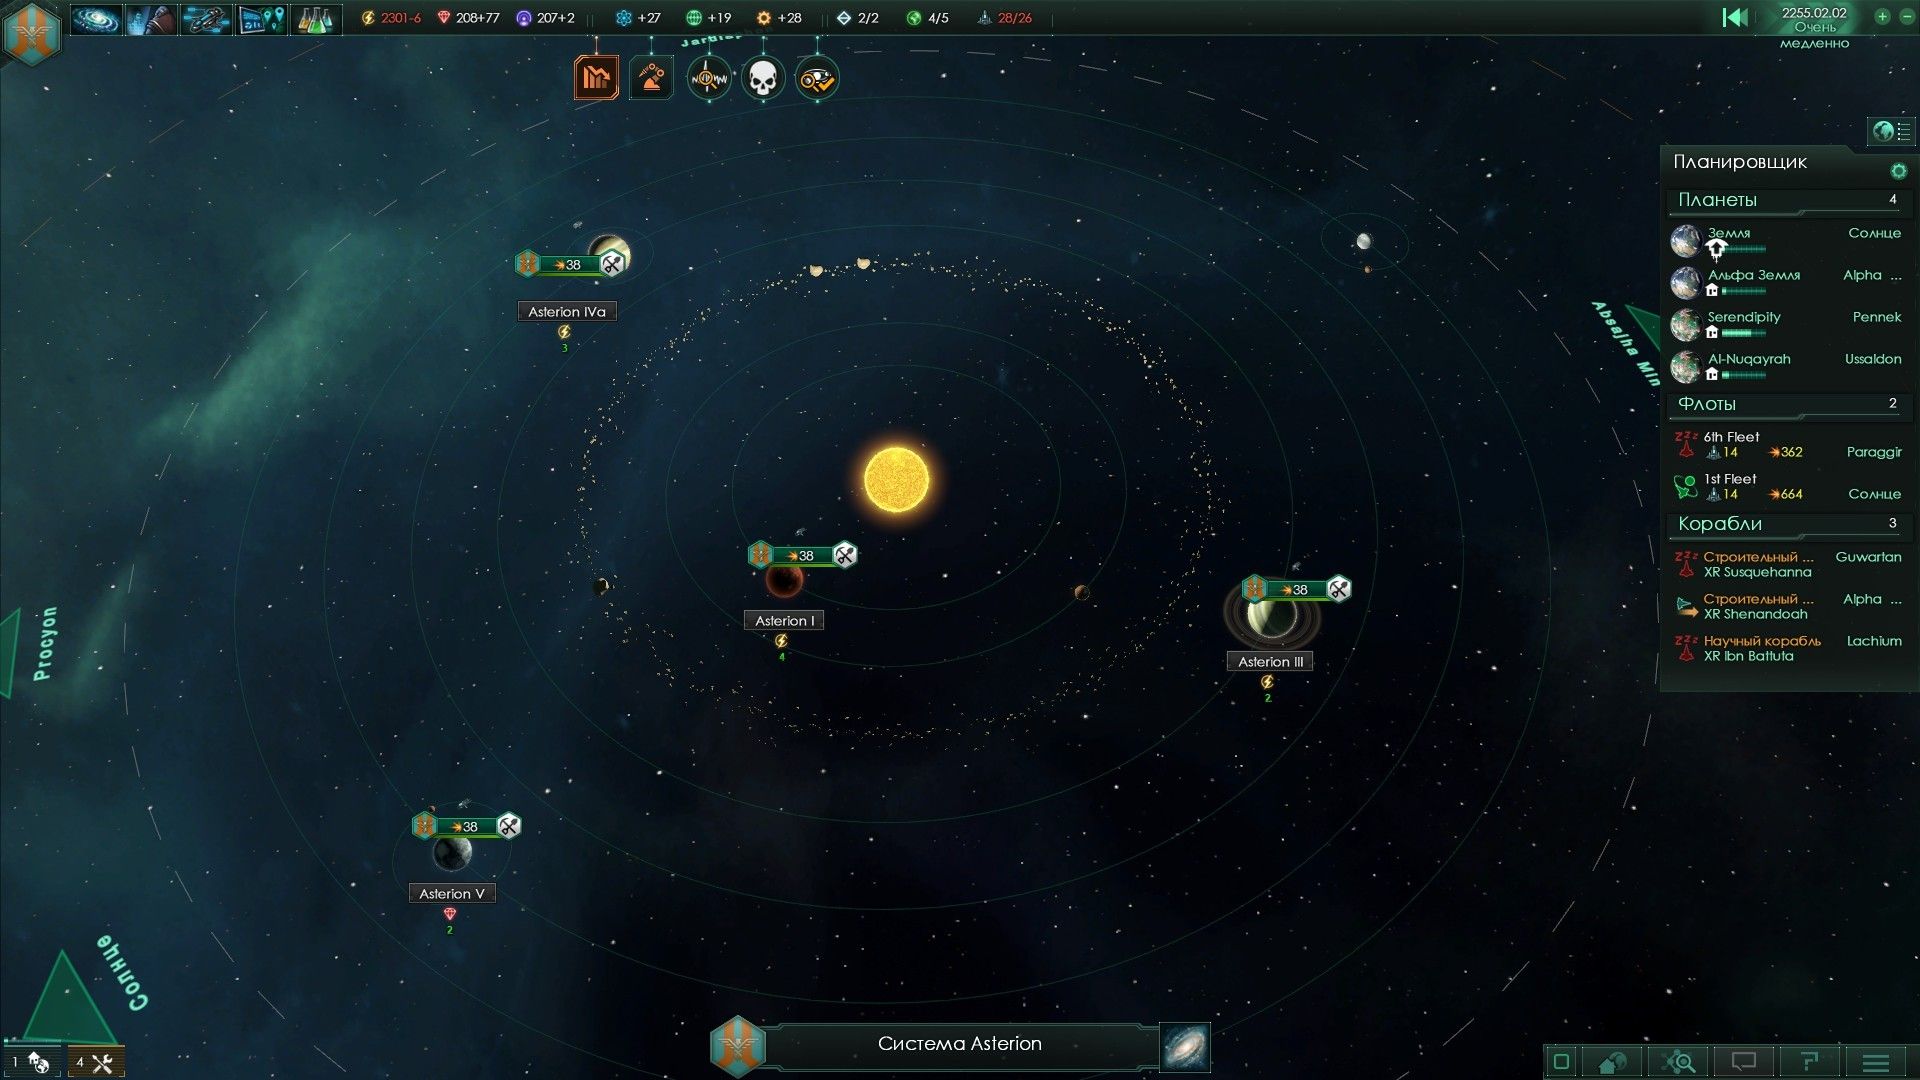 Stellaris fleet composition